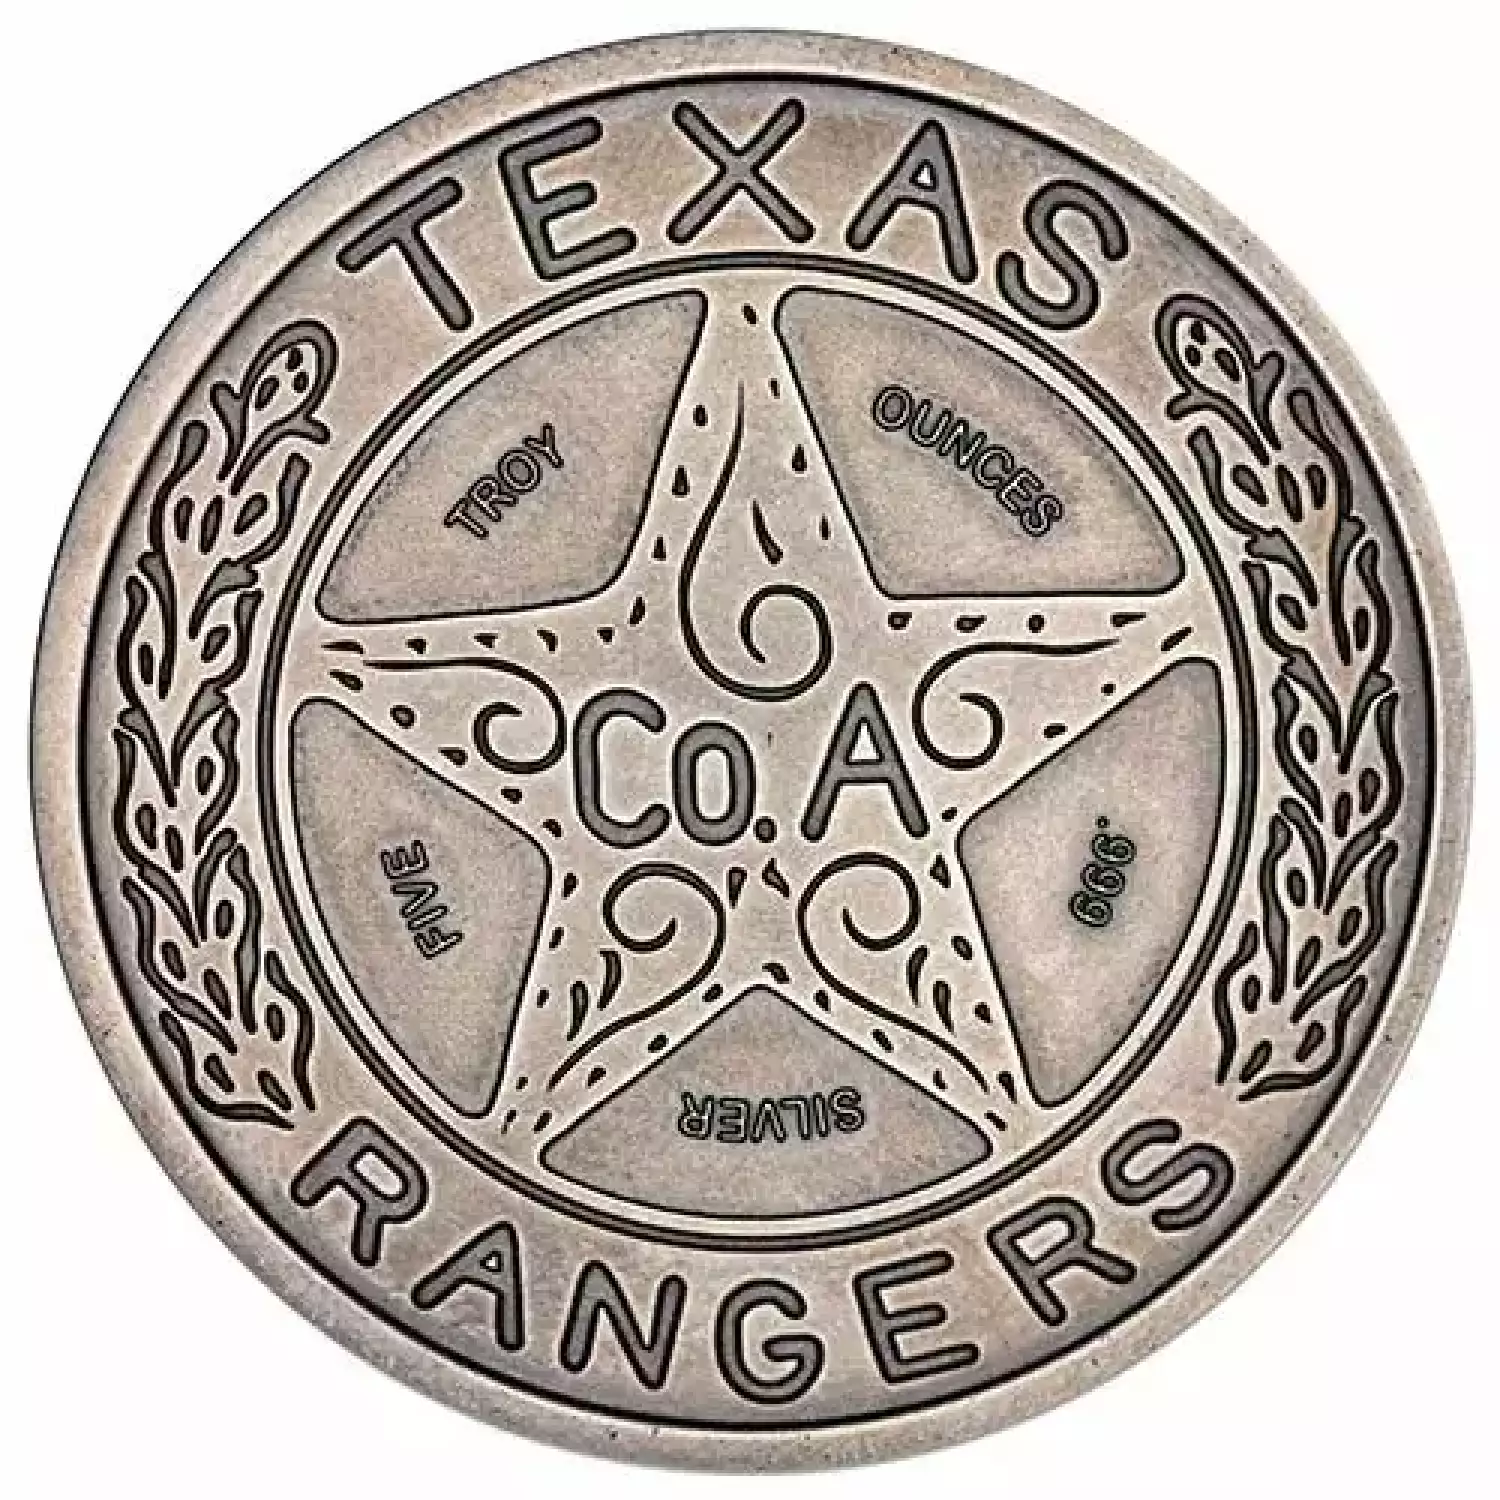 5 oz Antique Texas Ranger Wagon Wheel Badge Silver Round - Stout